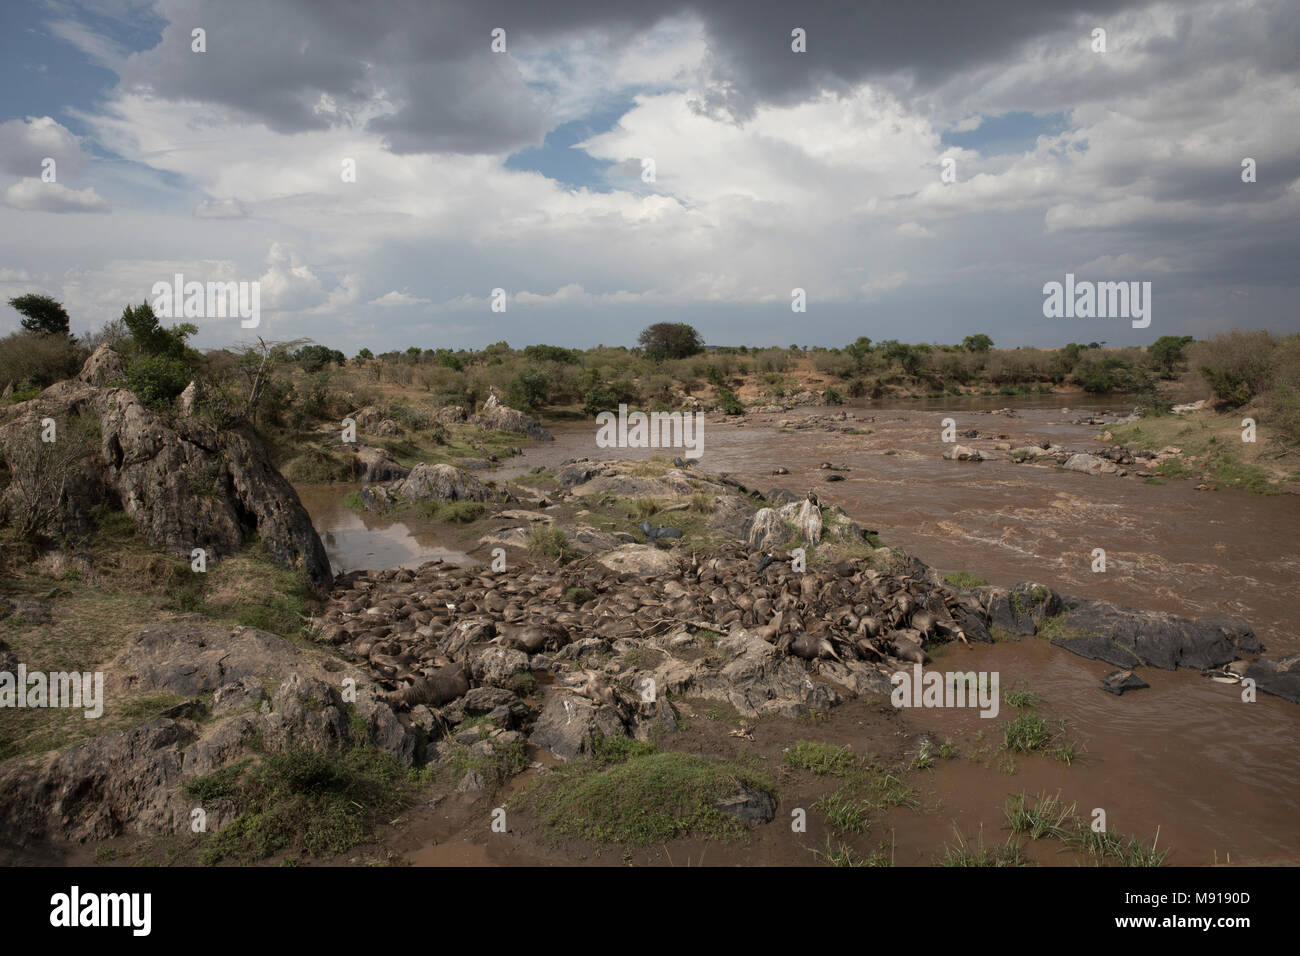 Río Mara. Los ñus muertos y los buitres. La reserva Masai Mara. Kenya. Foto de stock